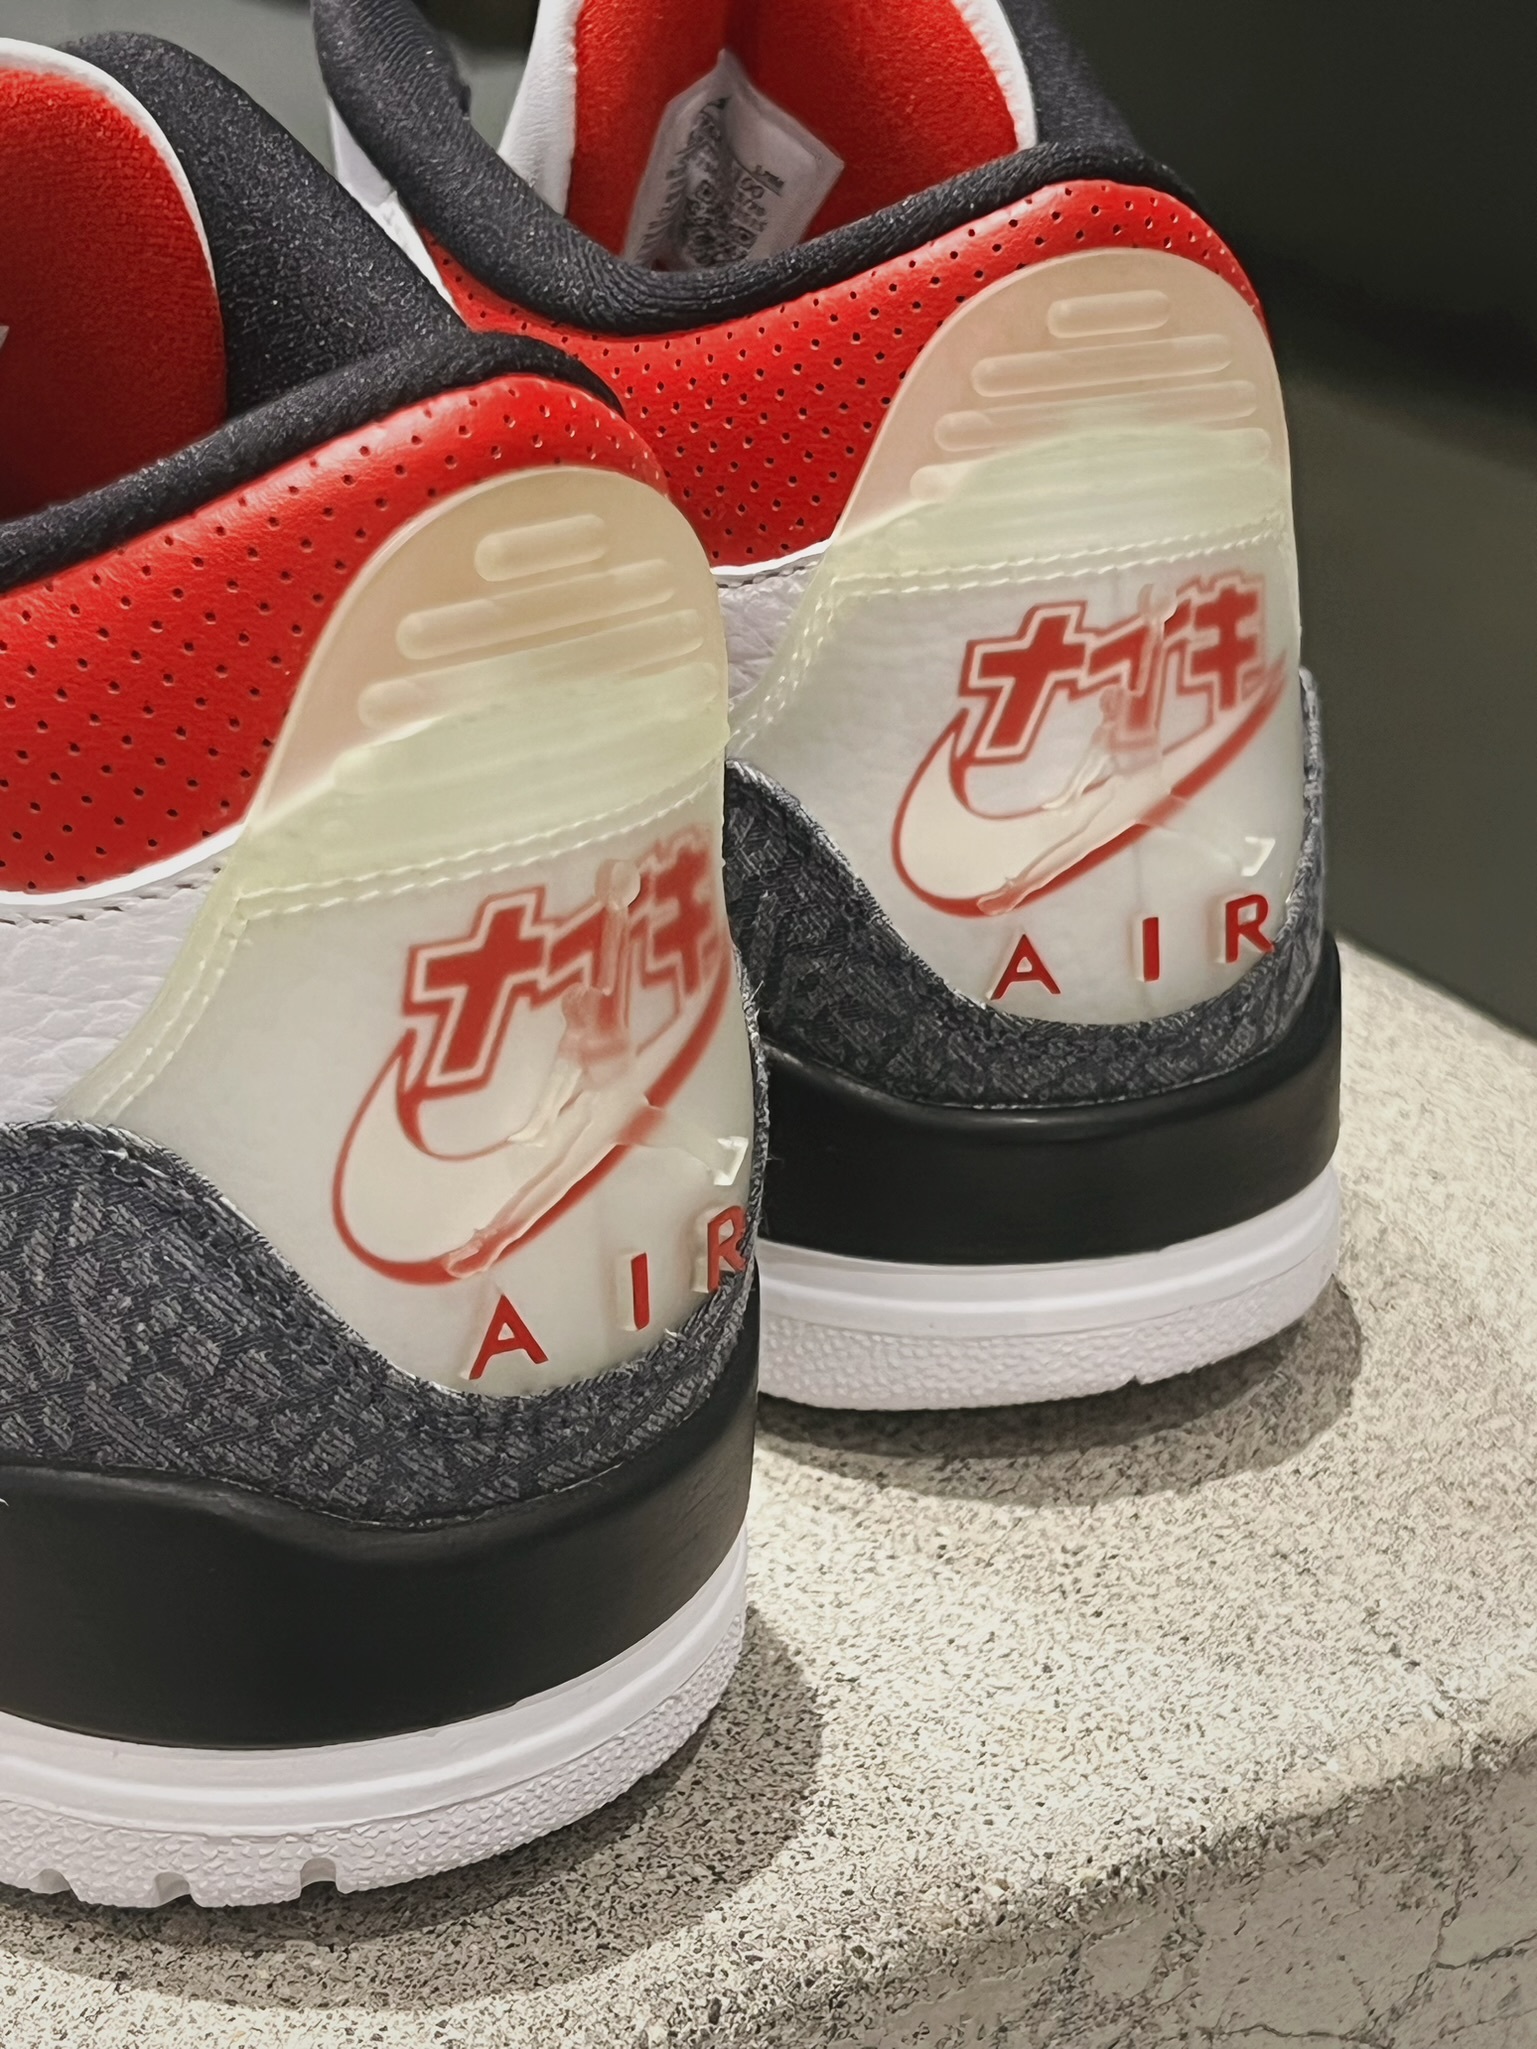 無盒特價>日本限定Nike Air Jordan 3 SE-T 火焰紅白紅(CZ6433100)